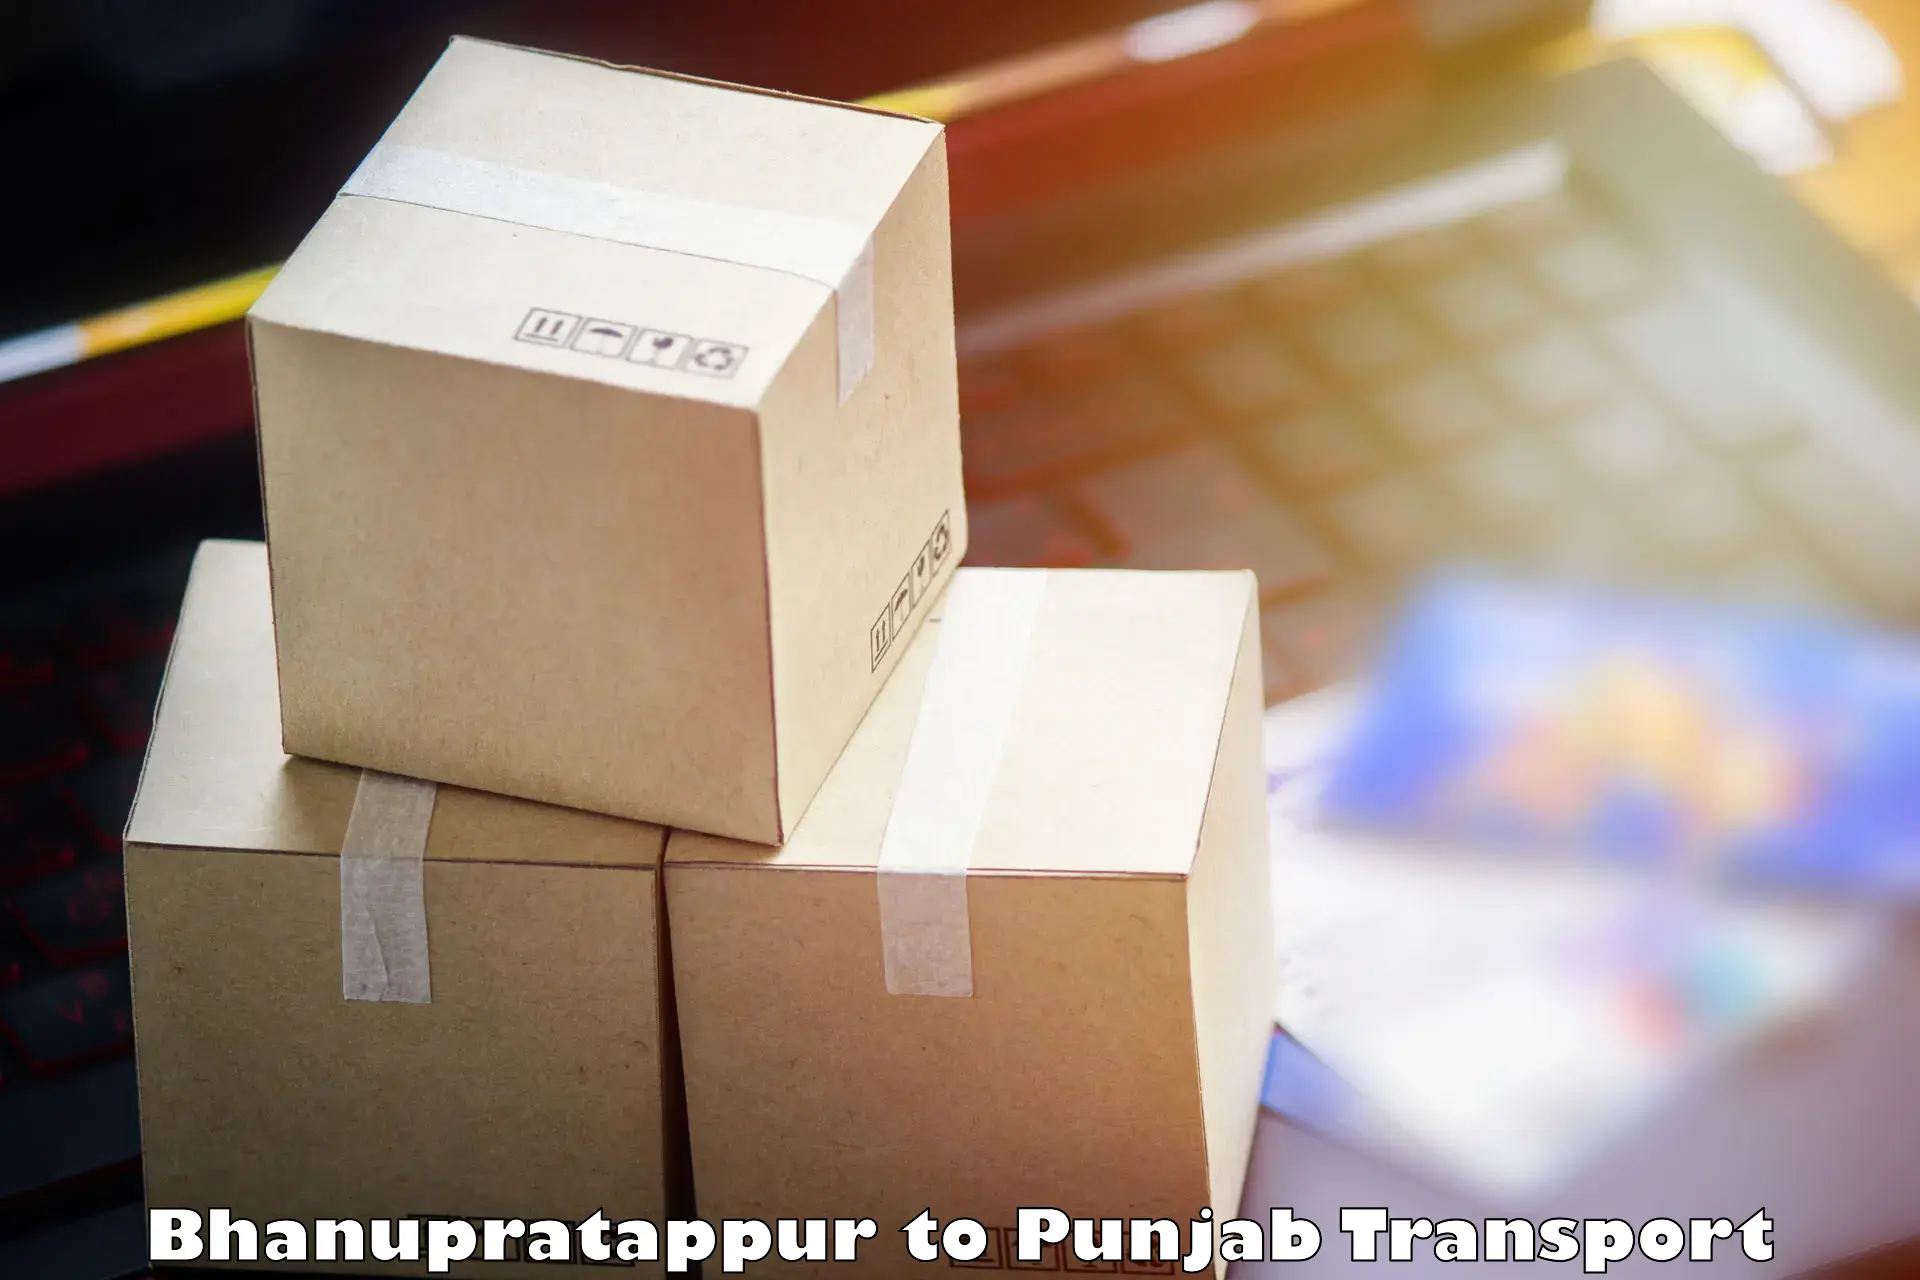 Road transport online services Bhanupratappur to Sirhind Fatehgarh